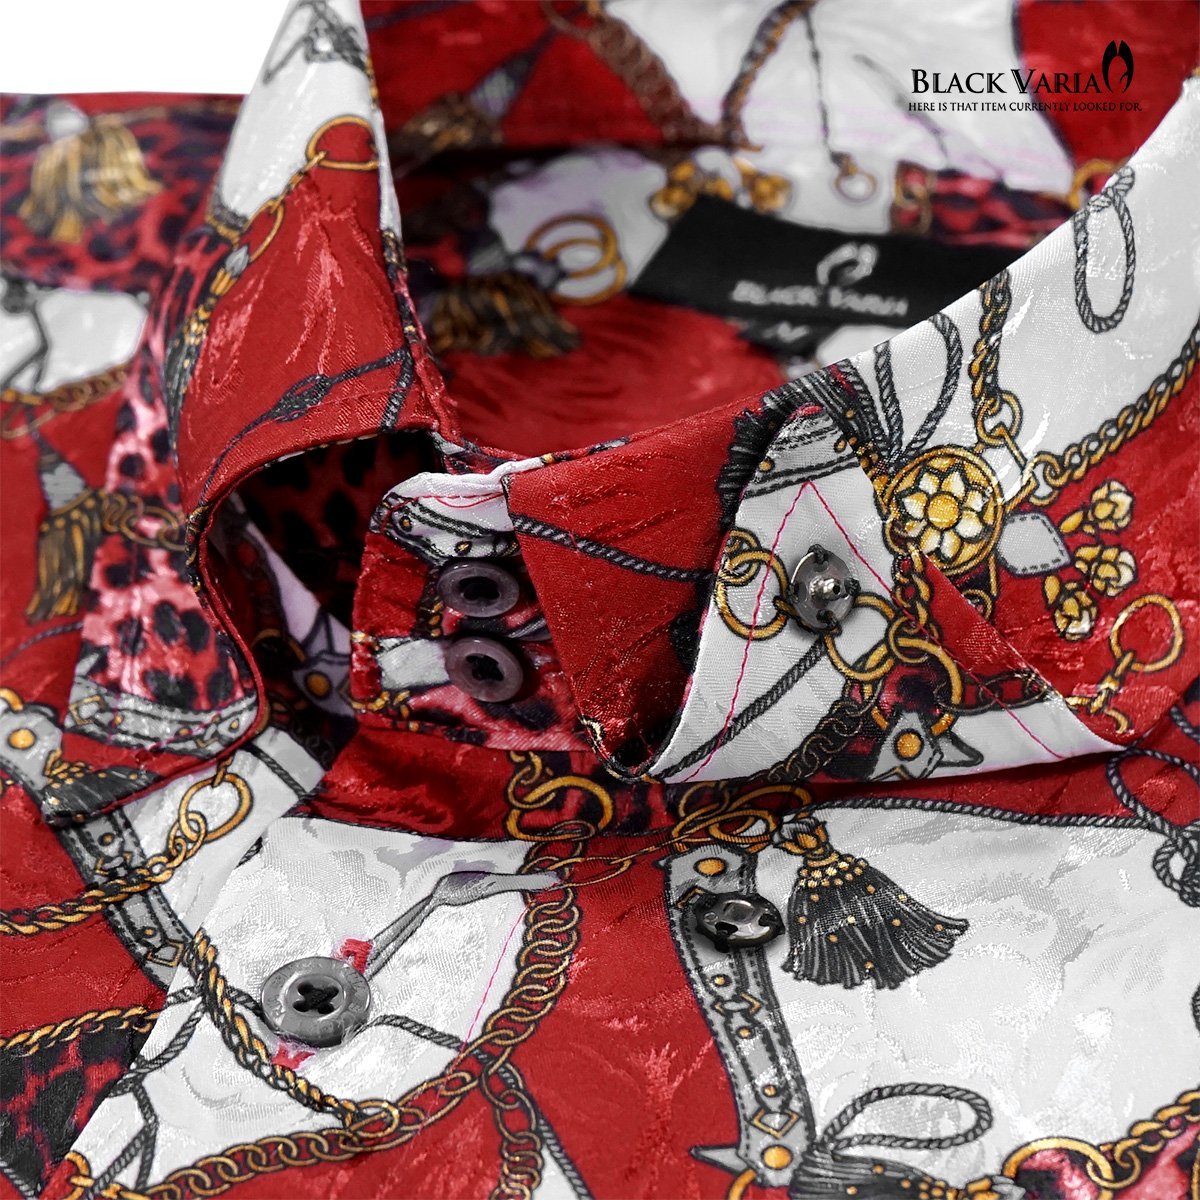 181718-re BLACK VARIA ドゥエボットーニ 豹ヒョウ×鎖スカーフ柄 スナップダウン ジャガードドレスシャツ メンズ(レッド赤) L パーティー_画像2